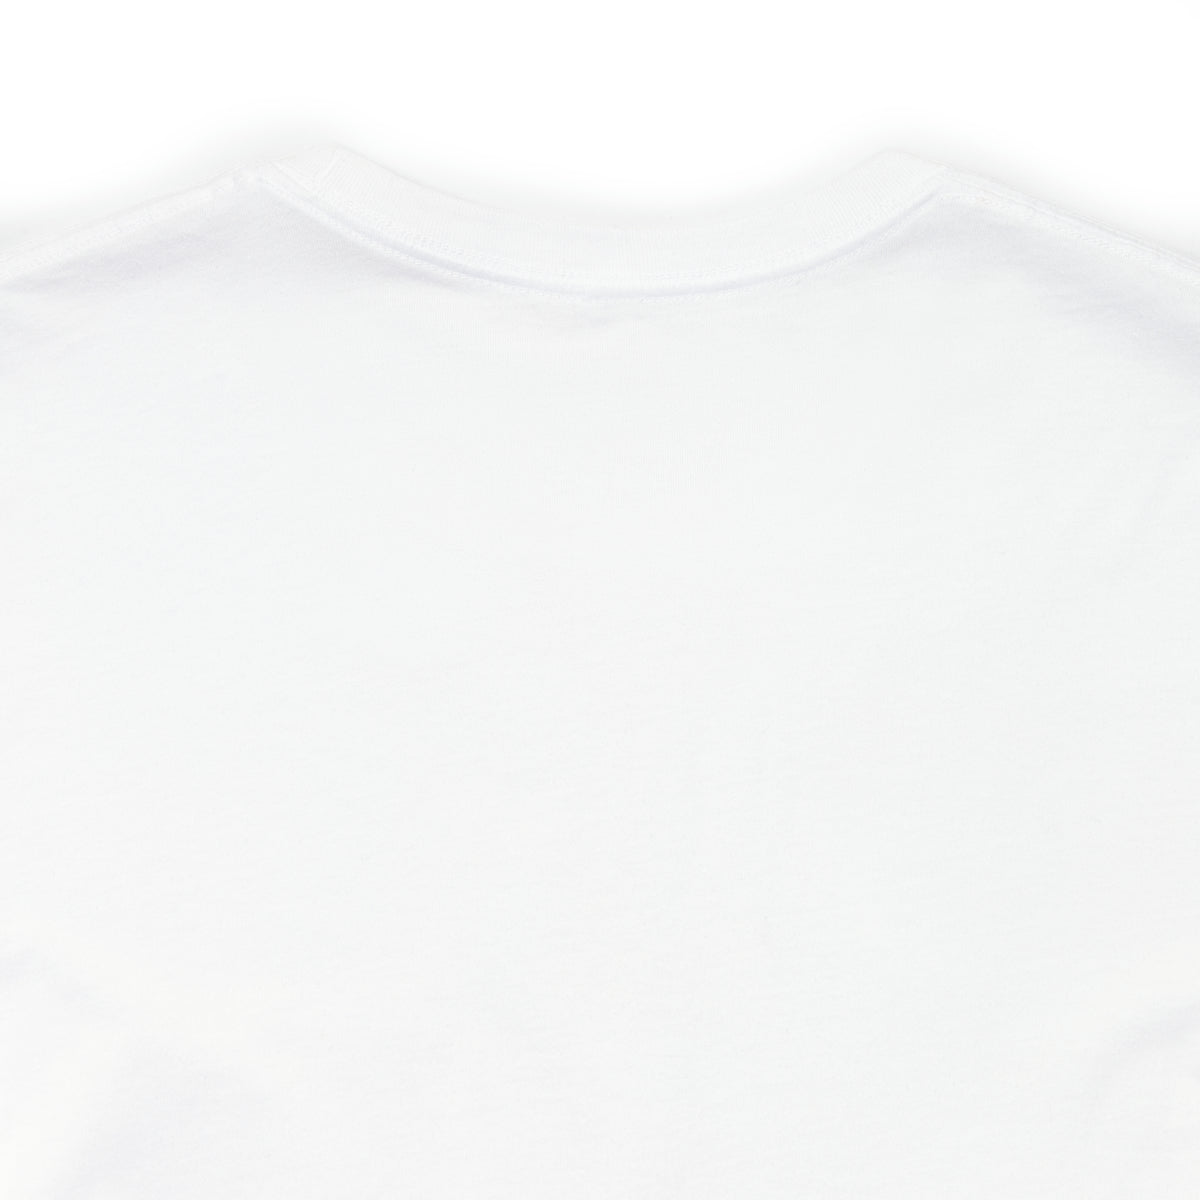 Catstronaut Funny Cat Shirt |Astronaut Shirt | Cat In Space Shirt | Cat Lover Gift | Nerd Gift | Unisex Jersey T-shirt